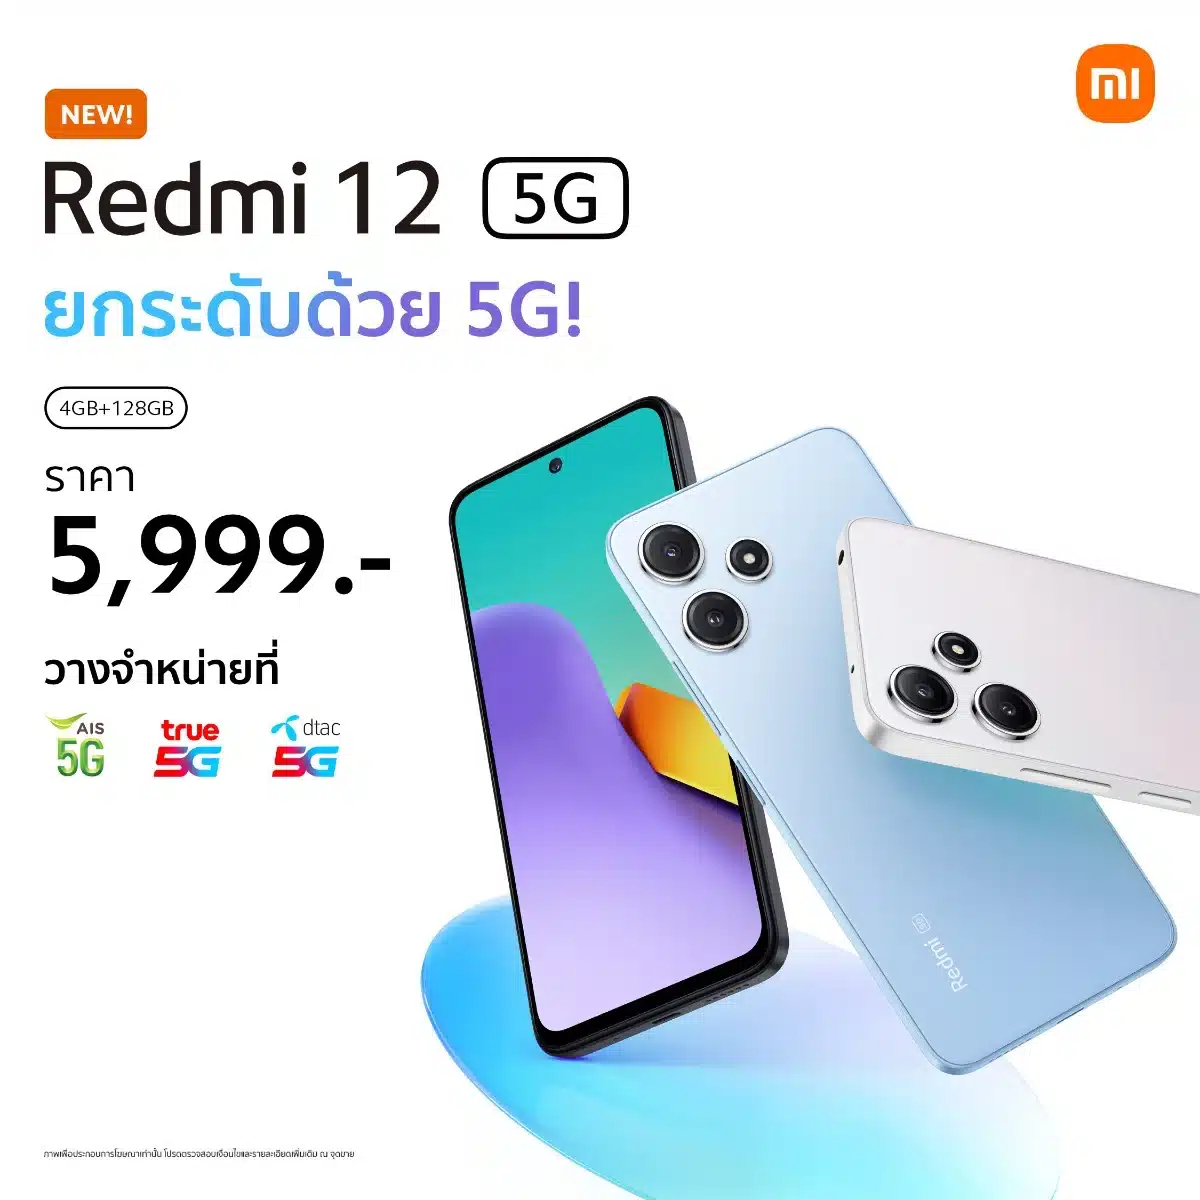 Redmi 12 5G ราคา